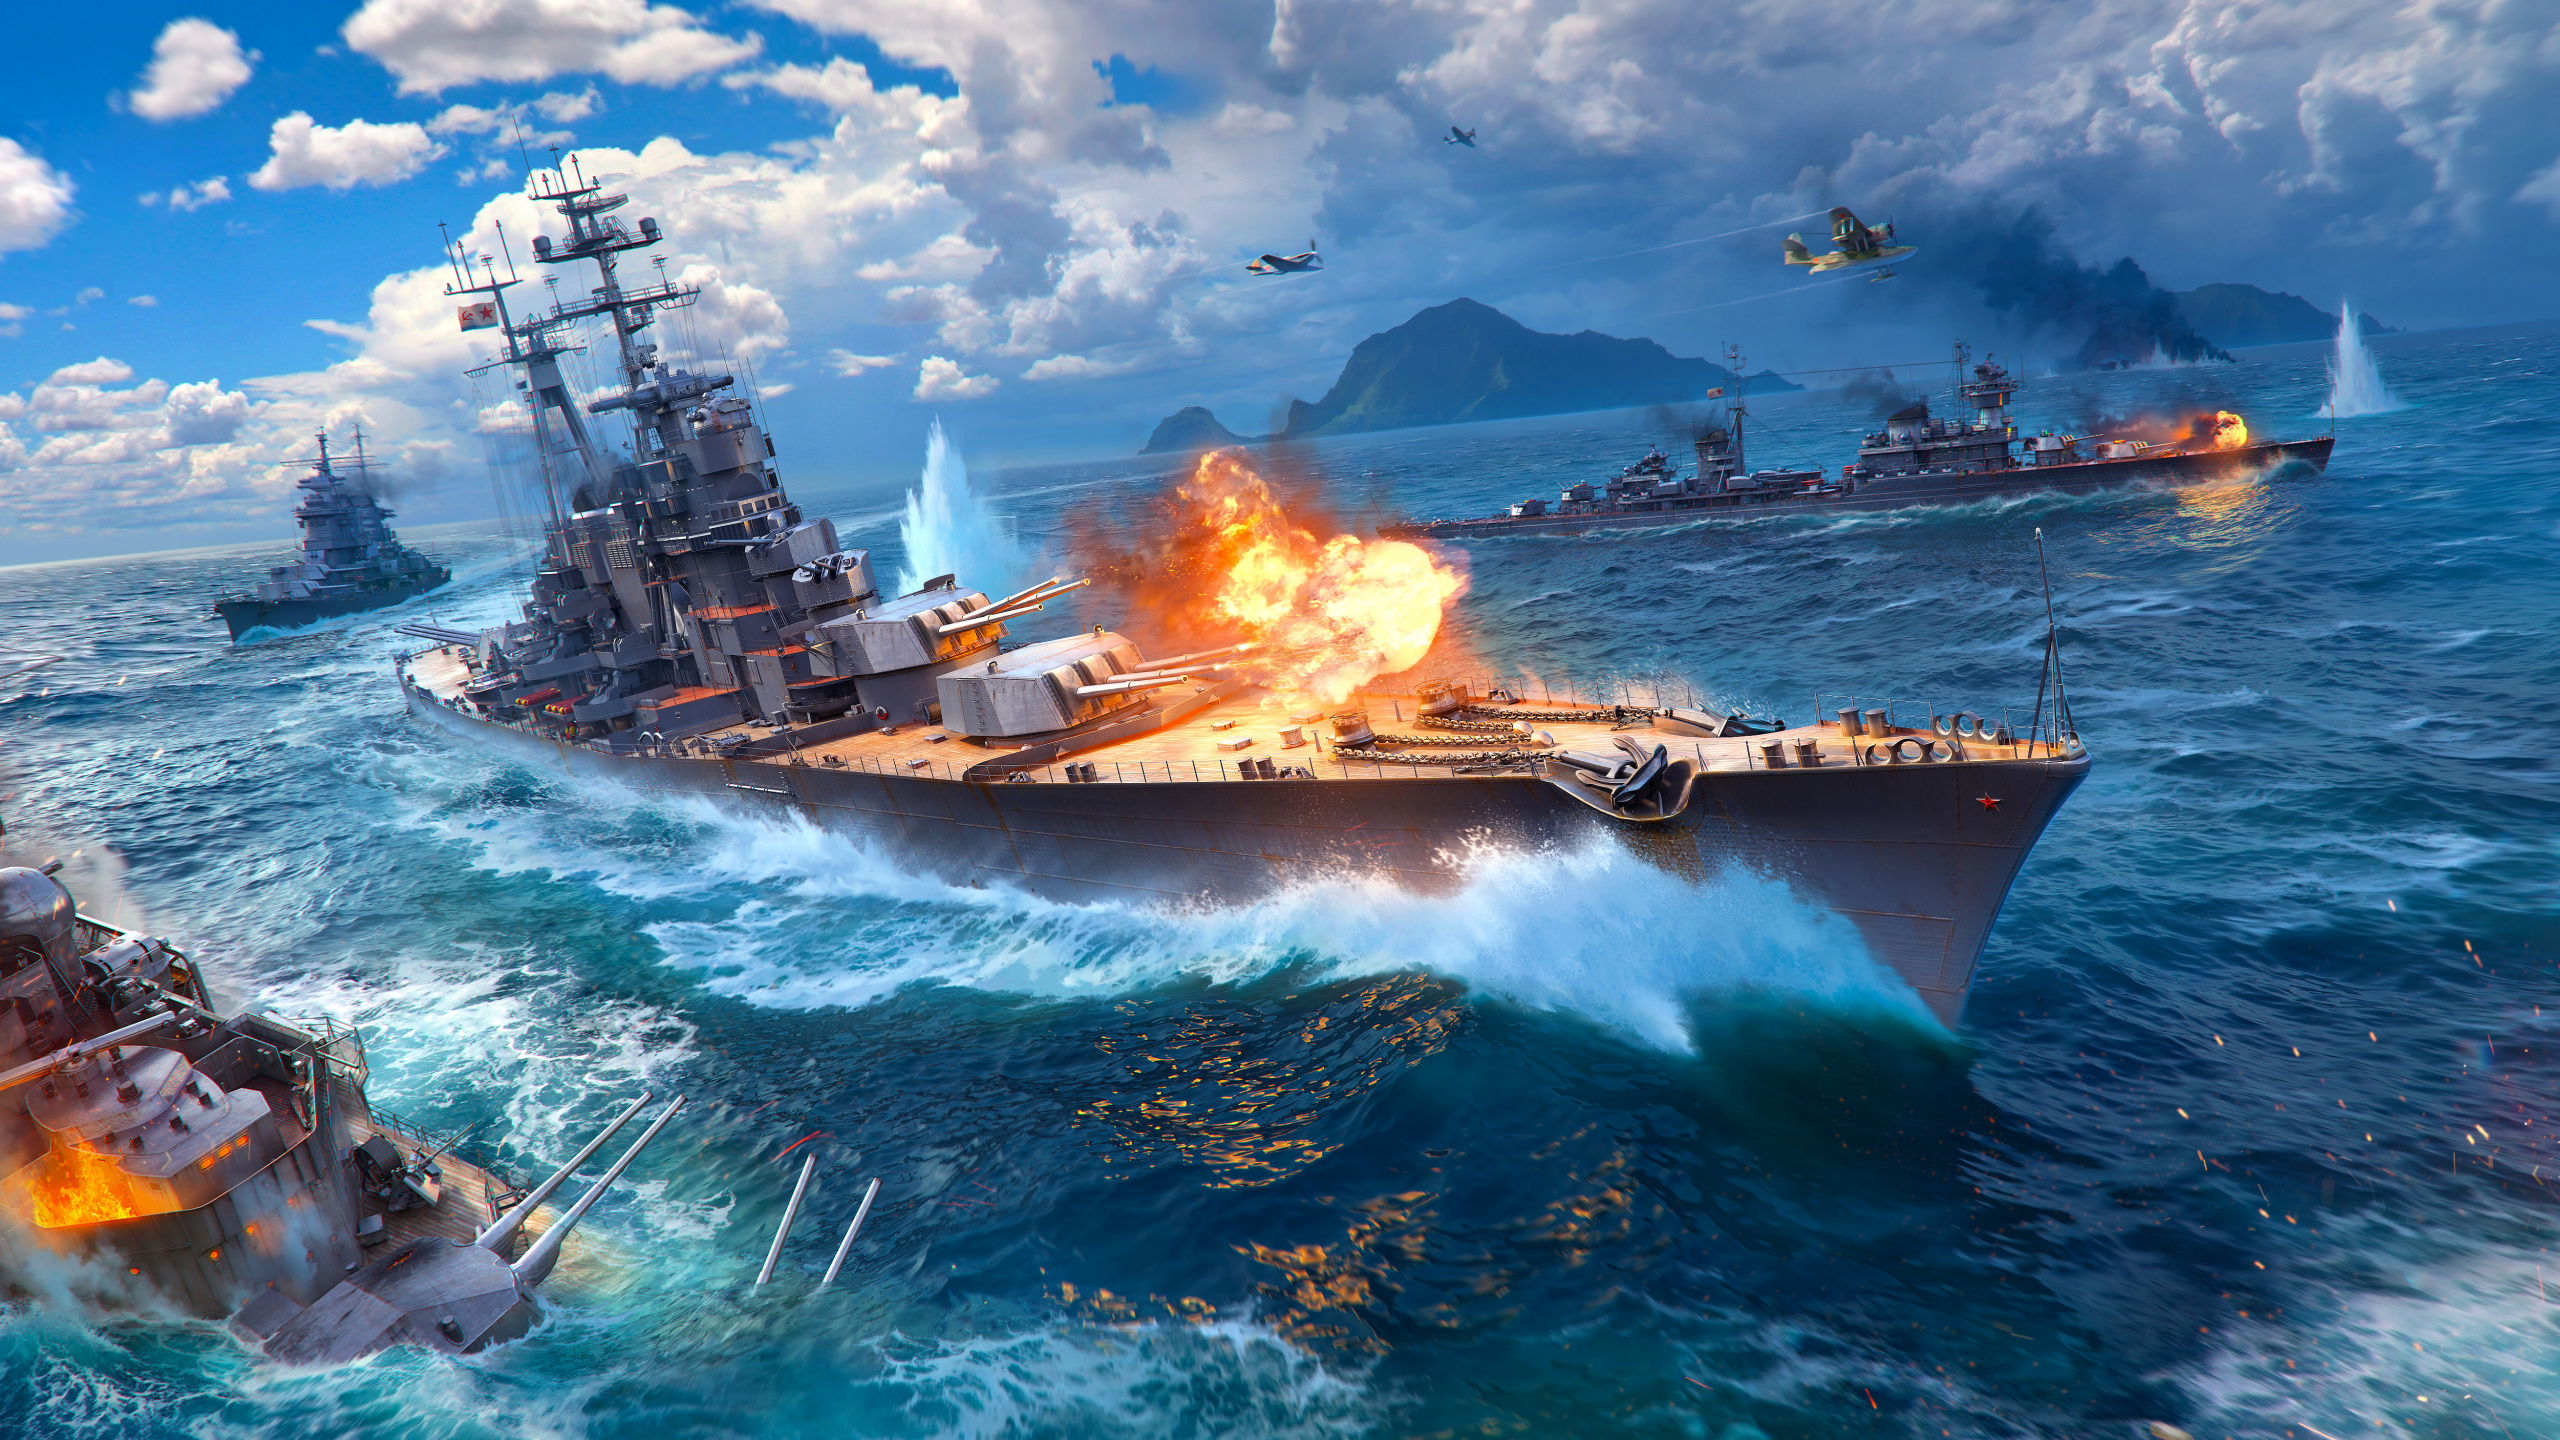 World of Warships, Warship, Battleship, Cruiser, Wargaming. Wallpaper in 2560x1440 Resolution